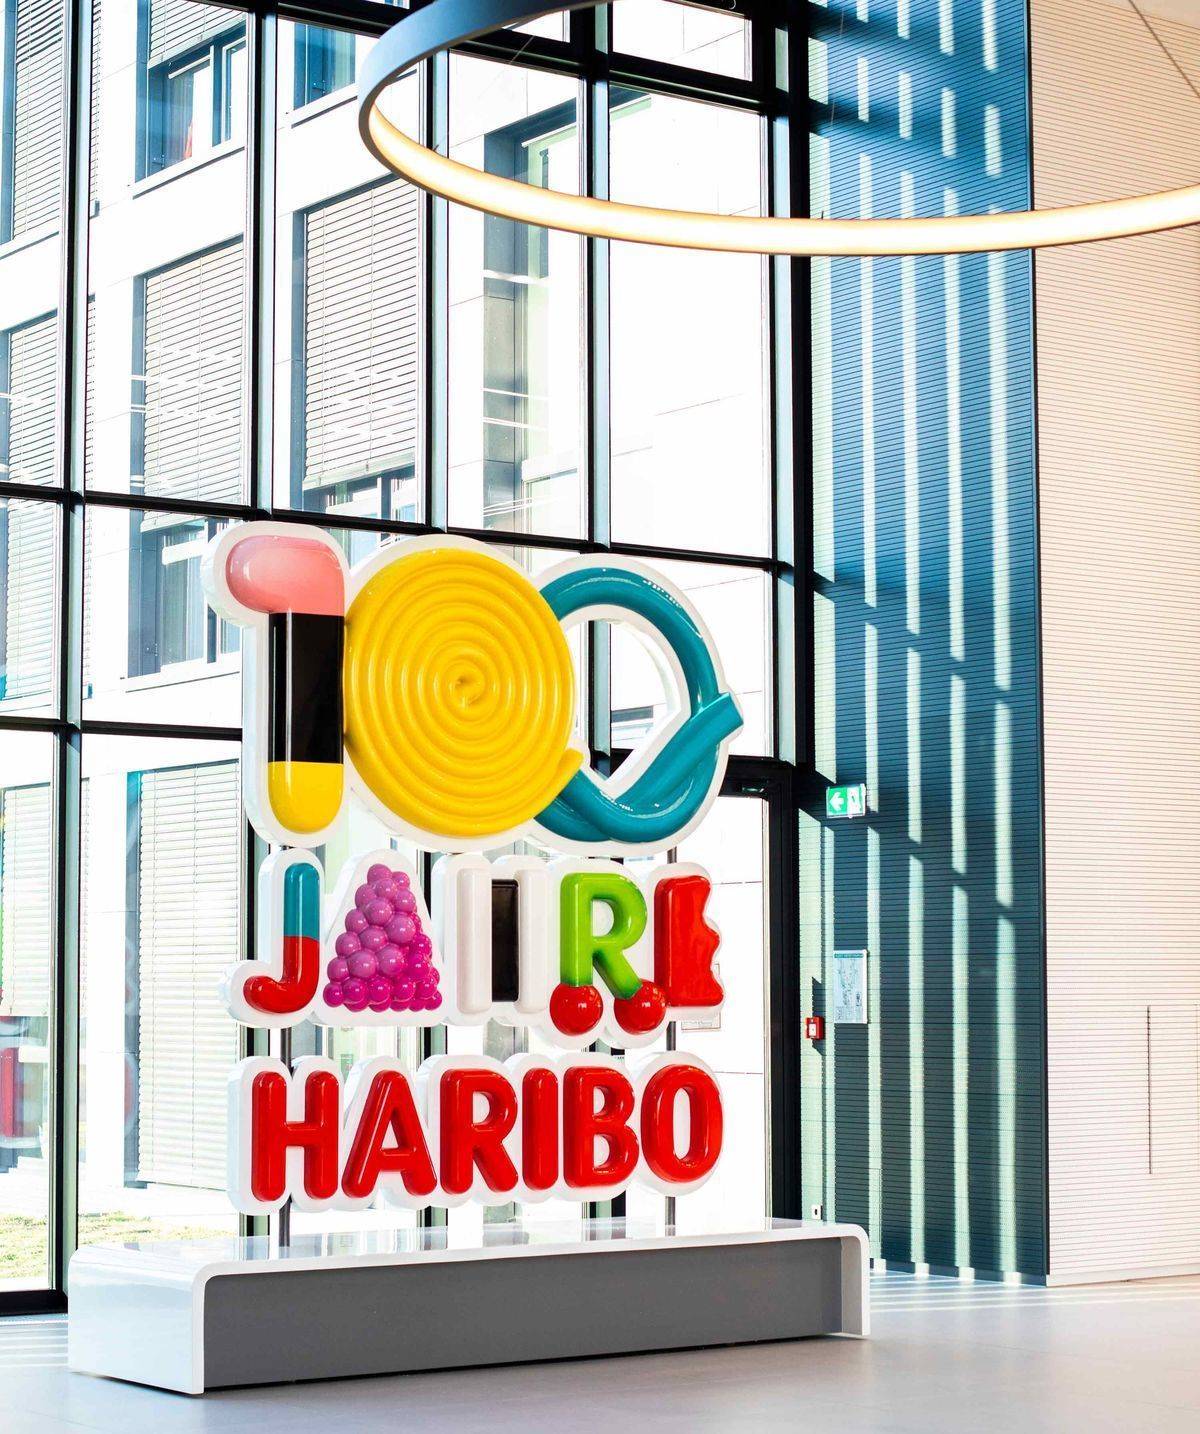 Das Haribo-Jubiläums-Logo